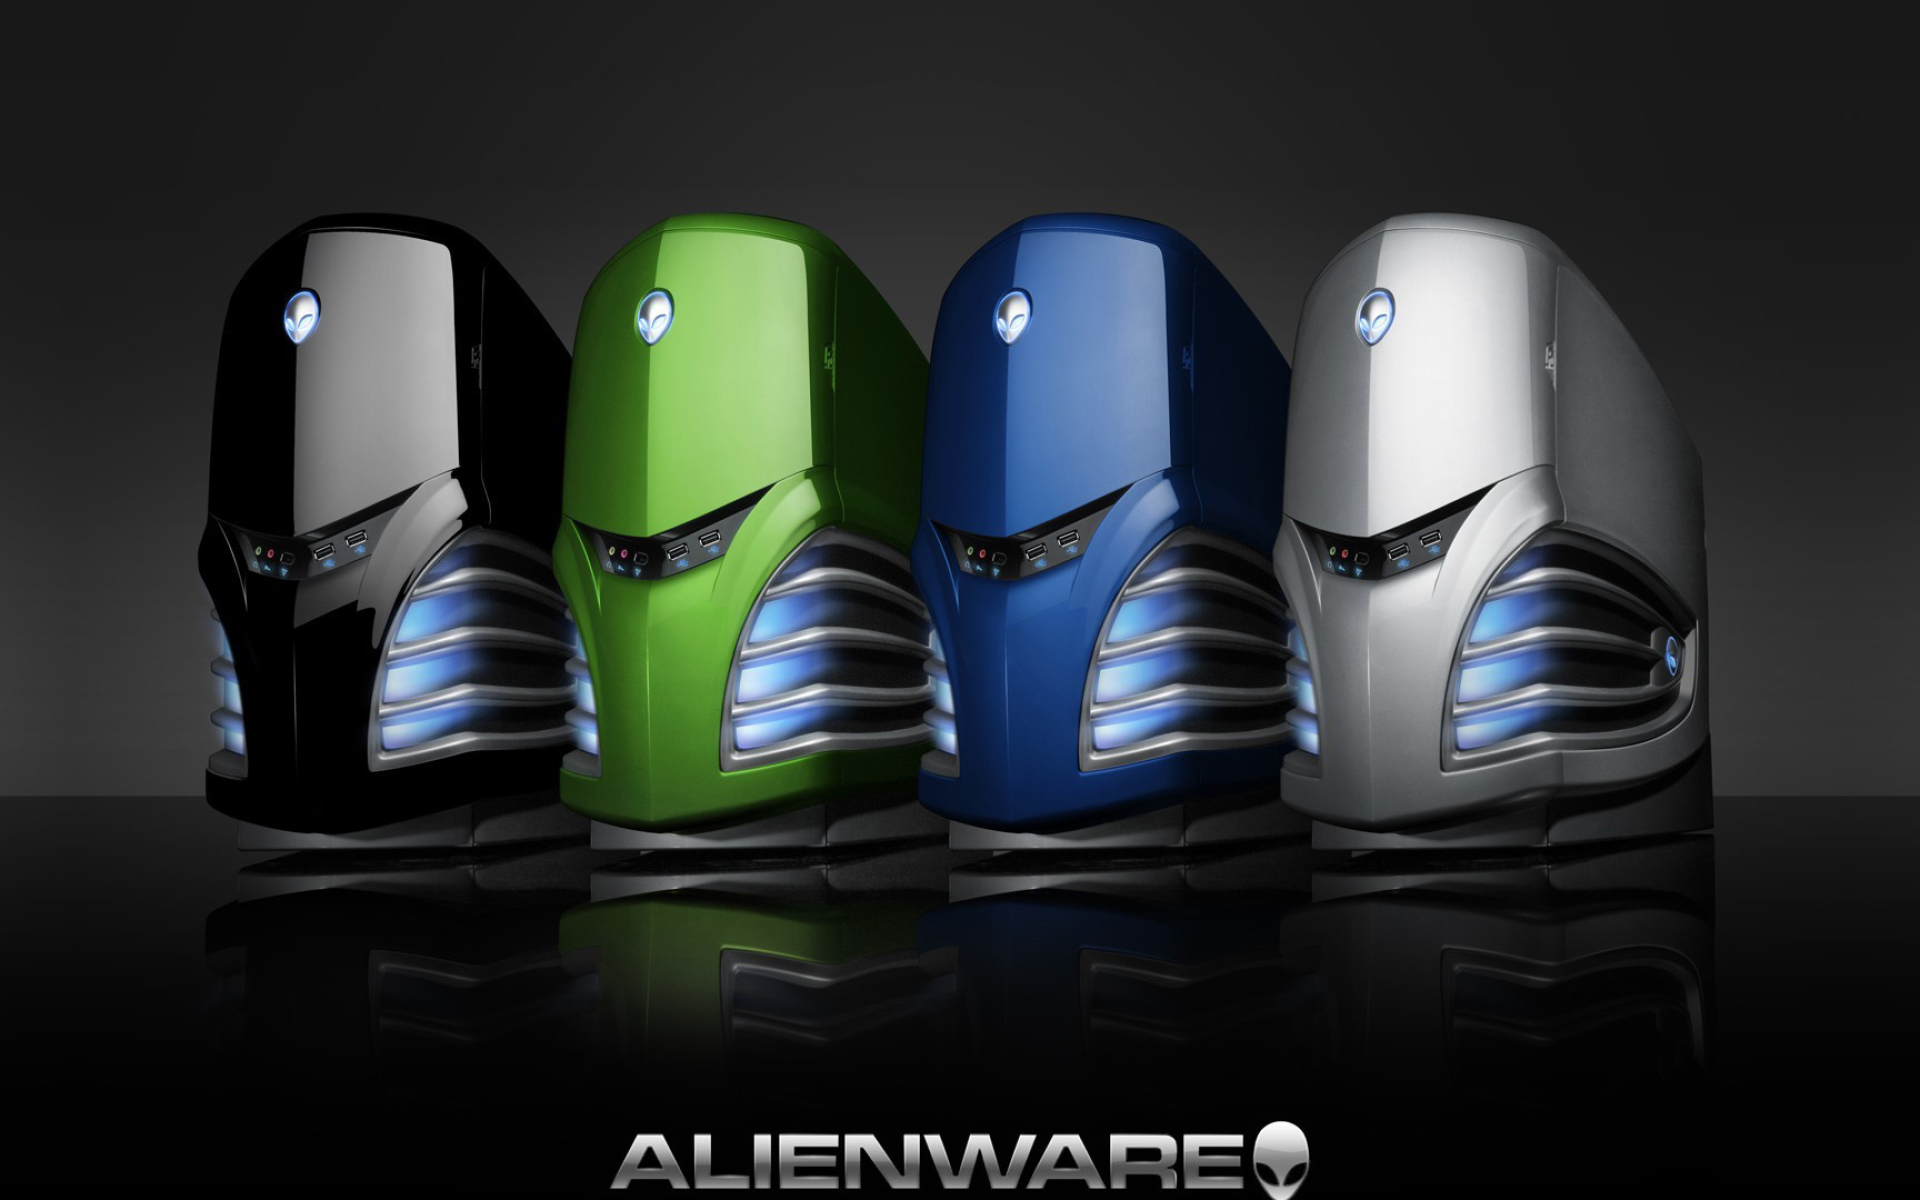 Alienware wallpapers, Ultrawide collection, Premium computer wallpapers, Alienware fans rejoice, 1920x1200 HD Desktop